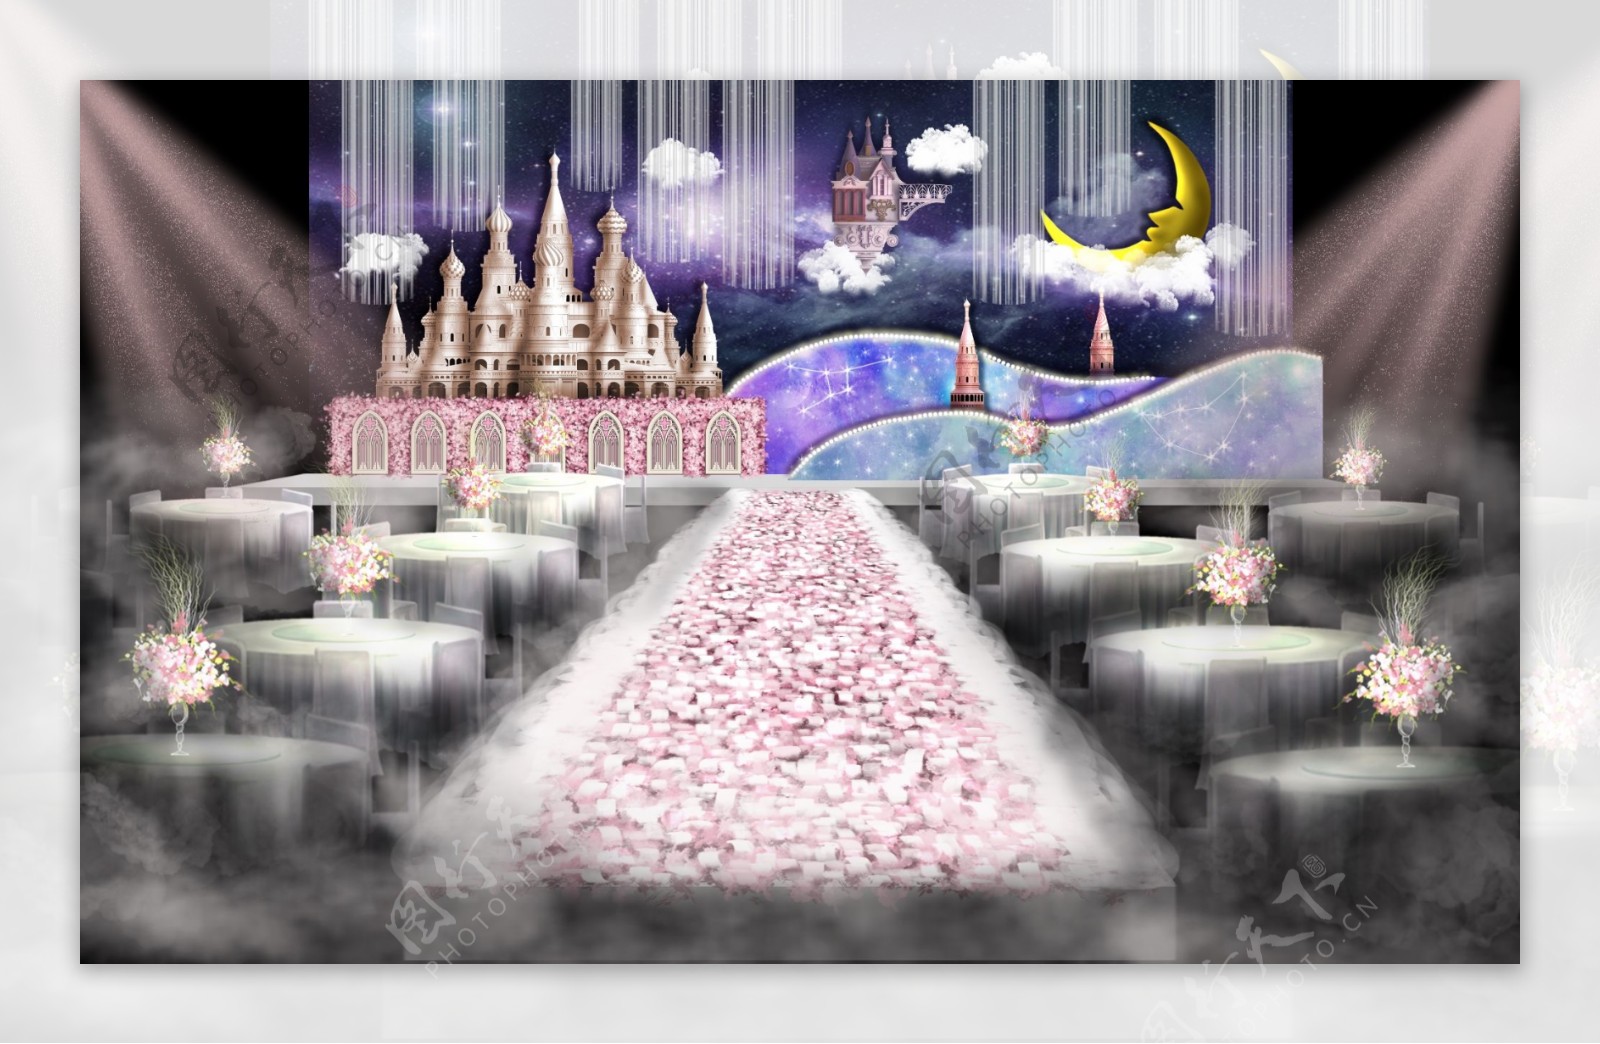 粉紫色童话城堡主题婚礼效果图